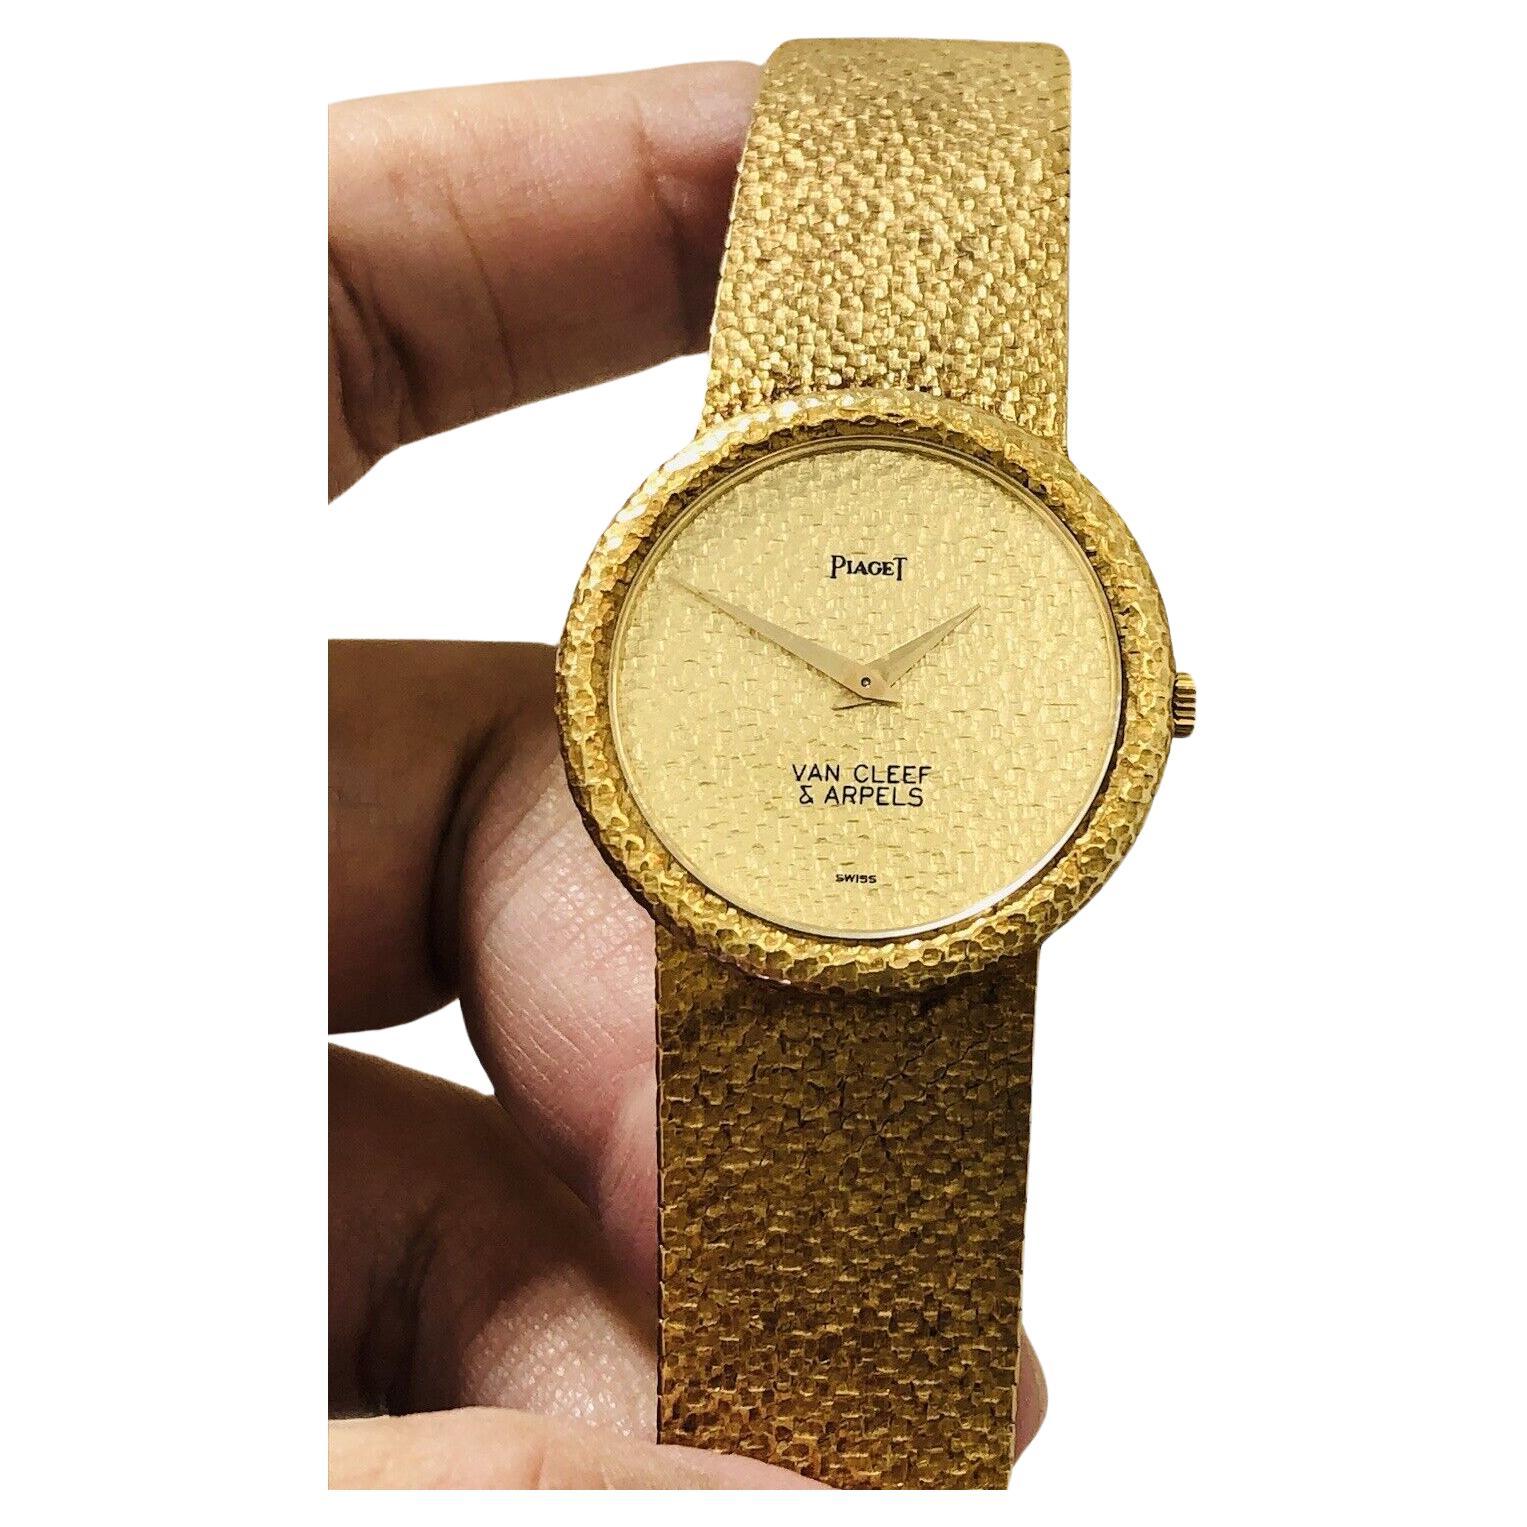 VAN CLEEF & ARPELS PIAGET 18k Yellow Gold Watch Circa 1970s Men's Size